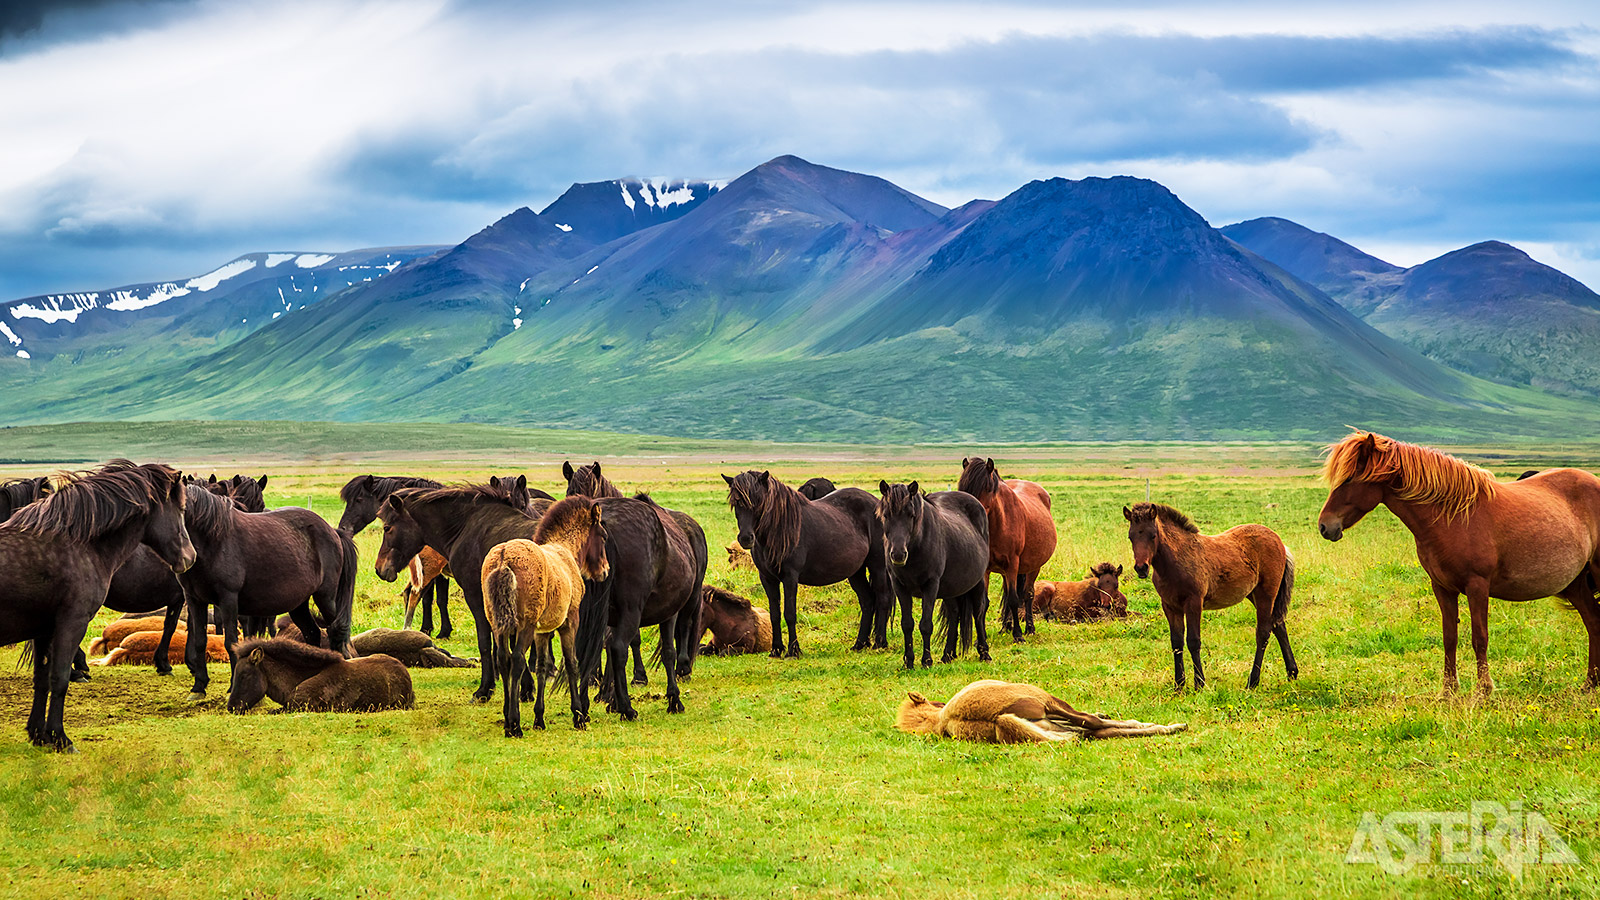 Je rijdt verder naar Skagafjördur, waar je IJslandse paarden in de weilanden ziet